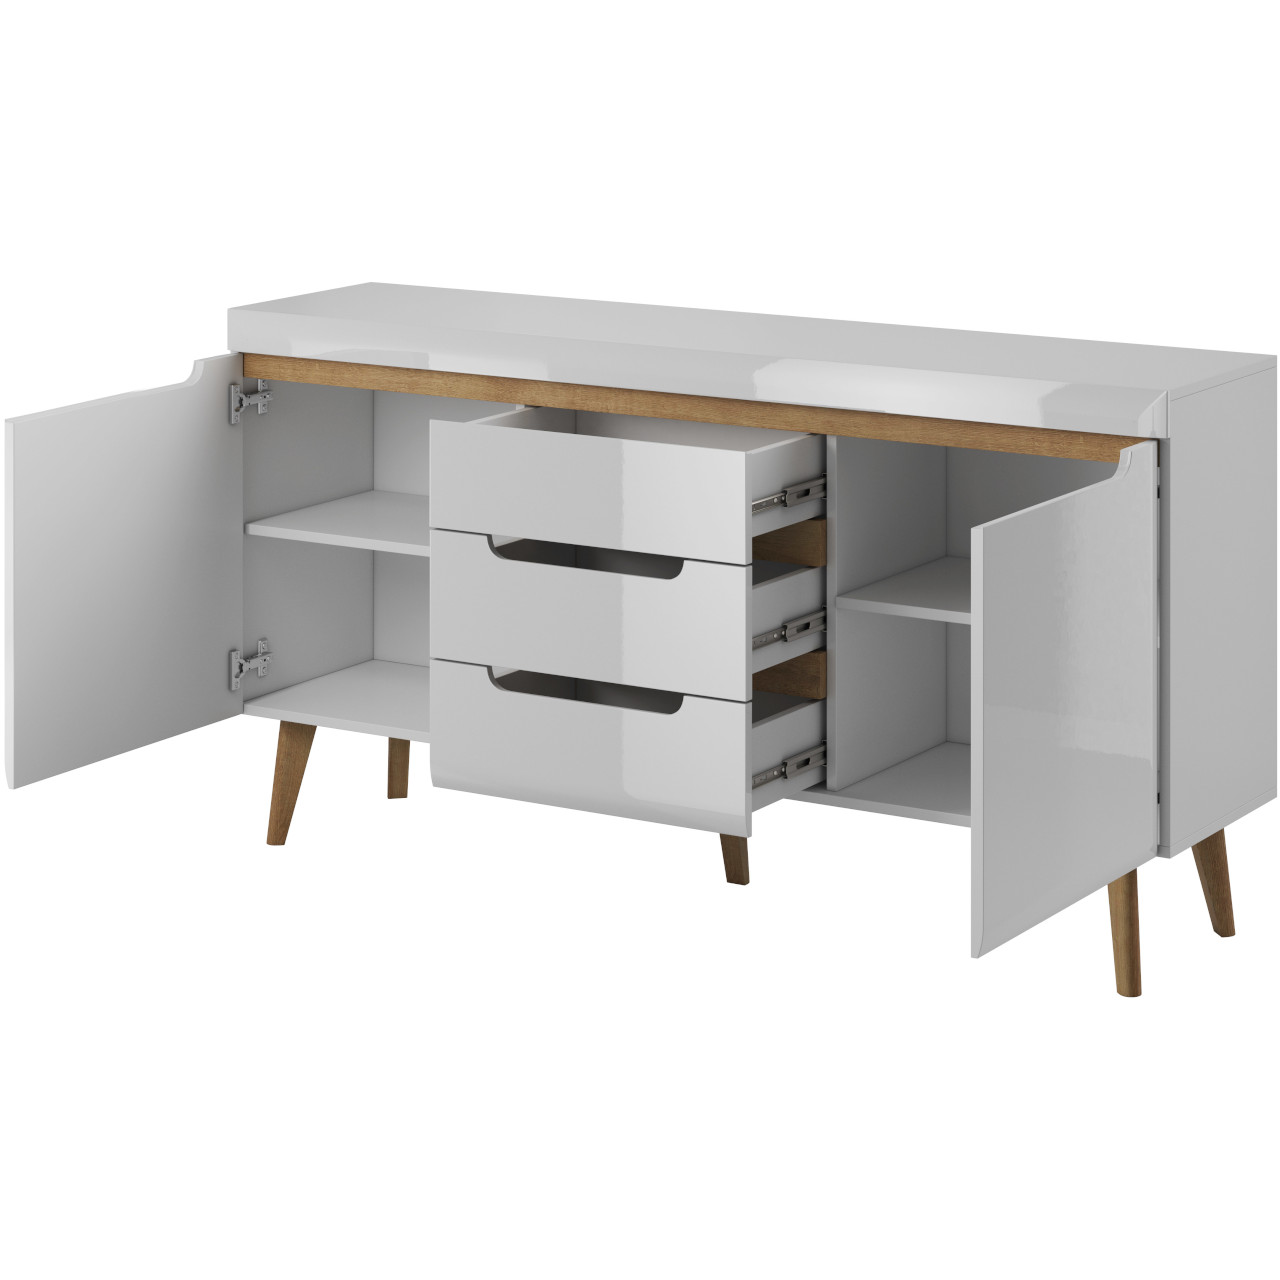 Storage cabinet NARDI 08 white gloss / riviera oak